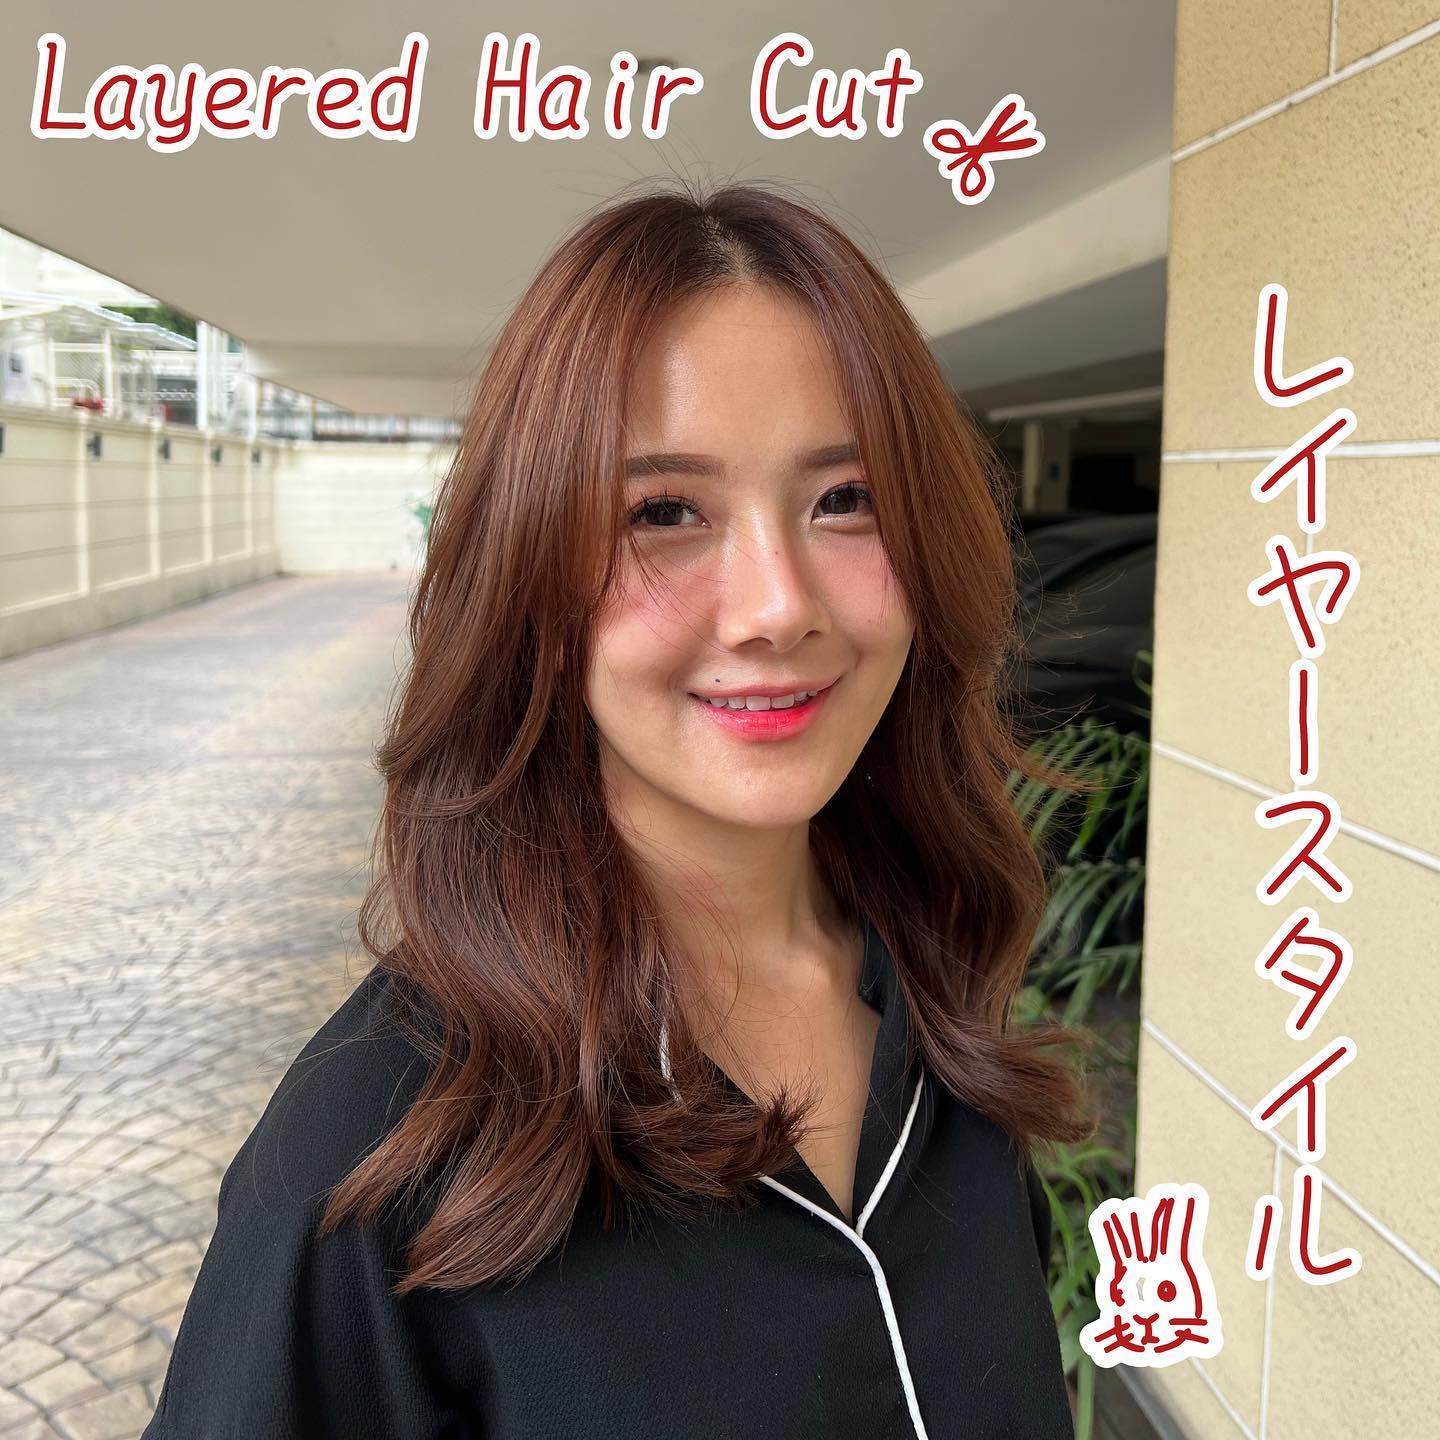 ไม่ว่าจะเป็นสาวๆ สายยุ่นหรือสายเกาก็ต้องถูกใจทรงนี้แน่ๆจะเป็นสาวหวานแบบสาวญี่ปุ่น หรือจะเป็นนางเอกซีรีส์แบบสาวเกาหลีก็ย่อมได้🤍
Layered Hair Cut️ก็เป็นอีกหนึ่งทรงผมที่สาวๆ นิยมตัดกันมากที่สุดค่ะ️จะผมสั้นหรือผมยาวก็สามารถตัดได้ทั้งนั้น สวยขนาดนี้พร้อมบินลัดฟ้าไปหาโอปป้าละจ้าา🫶🏽🤣  Stylist MOMOKO  YAMS hair&cafe  For booking/ご予約、お問い合わせ↓
LINE ID:@yams
Tel:02-163-4973  Business hours/営業時間↓
9:00 - 18:00
Closed on Wednesday,2nd & 4th Thursday  #ร้านทำผมญี่ปุ่น #YAMShaircafe #ตัดผมญี่ปุ่น #ยืดผมญี่ปุ่น #ดัดผมญี่ปุ่น #ร้านทำผม #バンコク生活 #バンコク在住 #バンコク暮らし #バンコク子連れ美容室 #バンコク美容室 #japanesehairsalon #ร้านทำสีผมไม่เสีย #ออกแบบทรงผม #สีผมอินเทรนด์ #ร้านทำผมแนะนำ #ช่างญี่ปุ่น